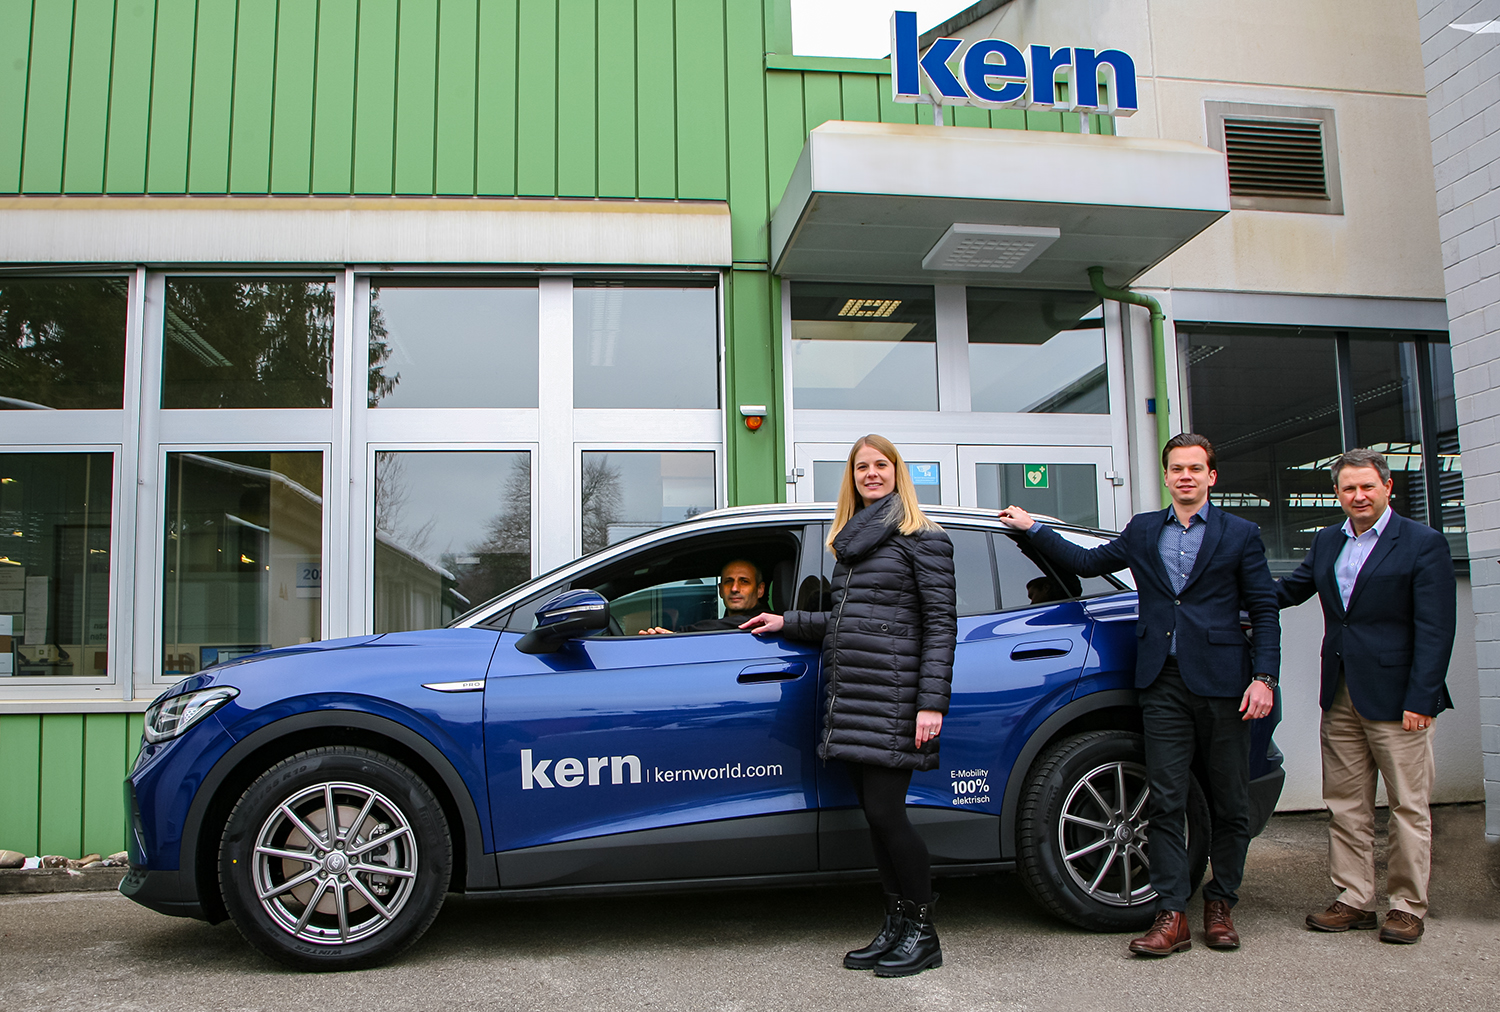 Kern “goes green“ - Ökologisch saubere Fahrten zu den Kunden / Ecologically clean journeys to customers 